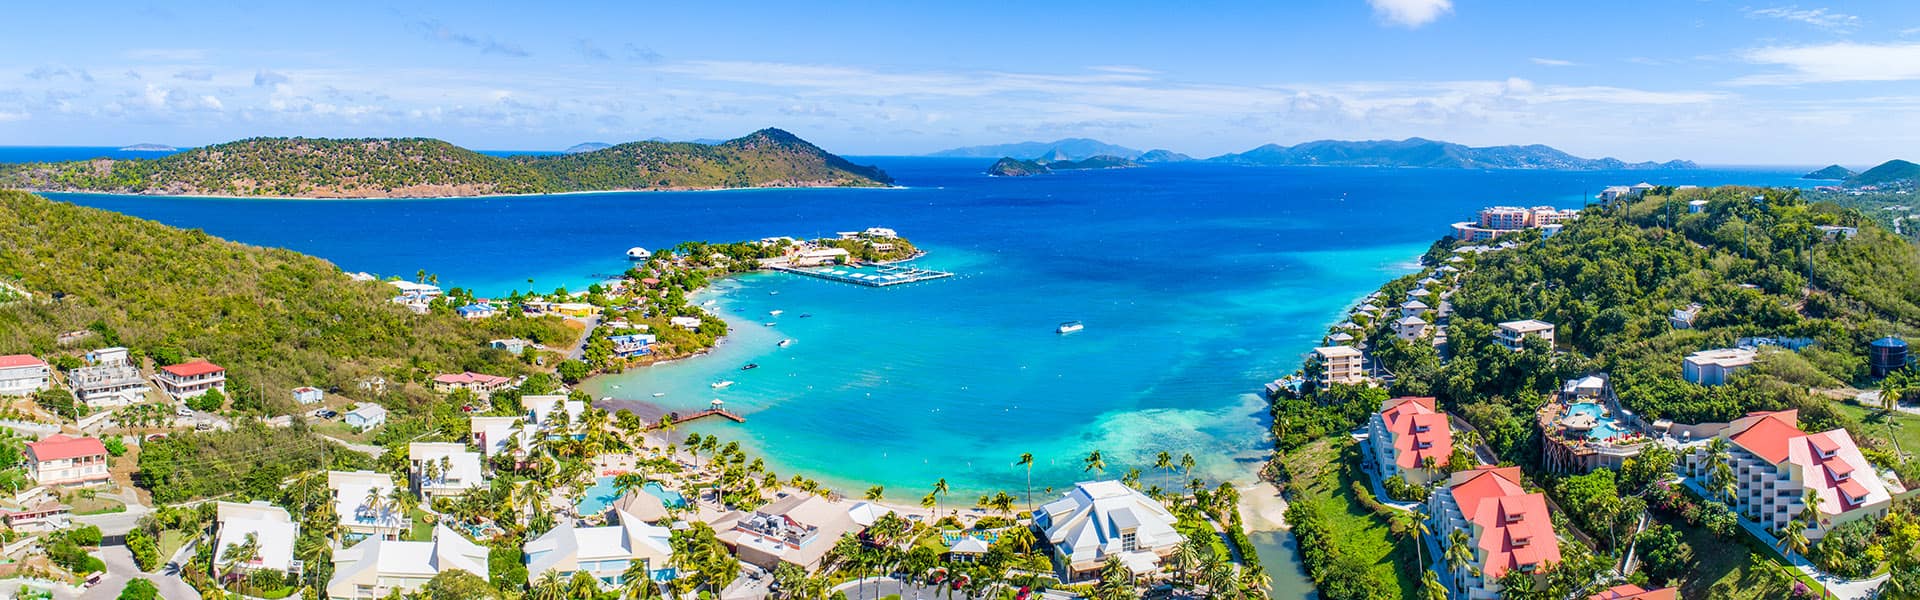 Karibik: Great Stirrup Cay und Dominikanische Republik